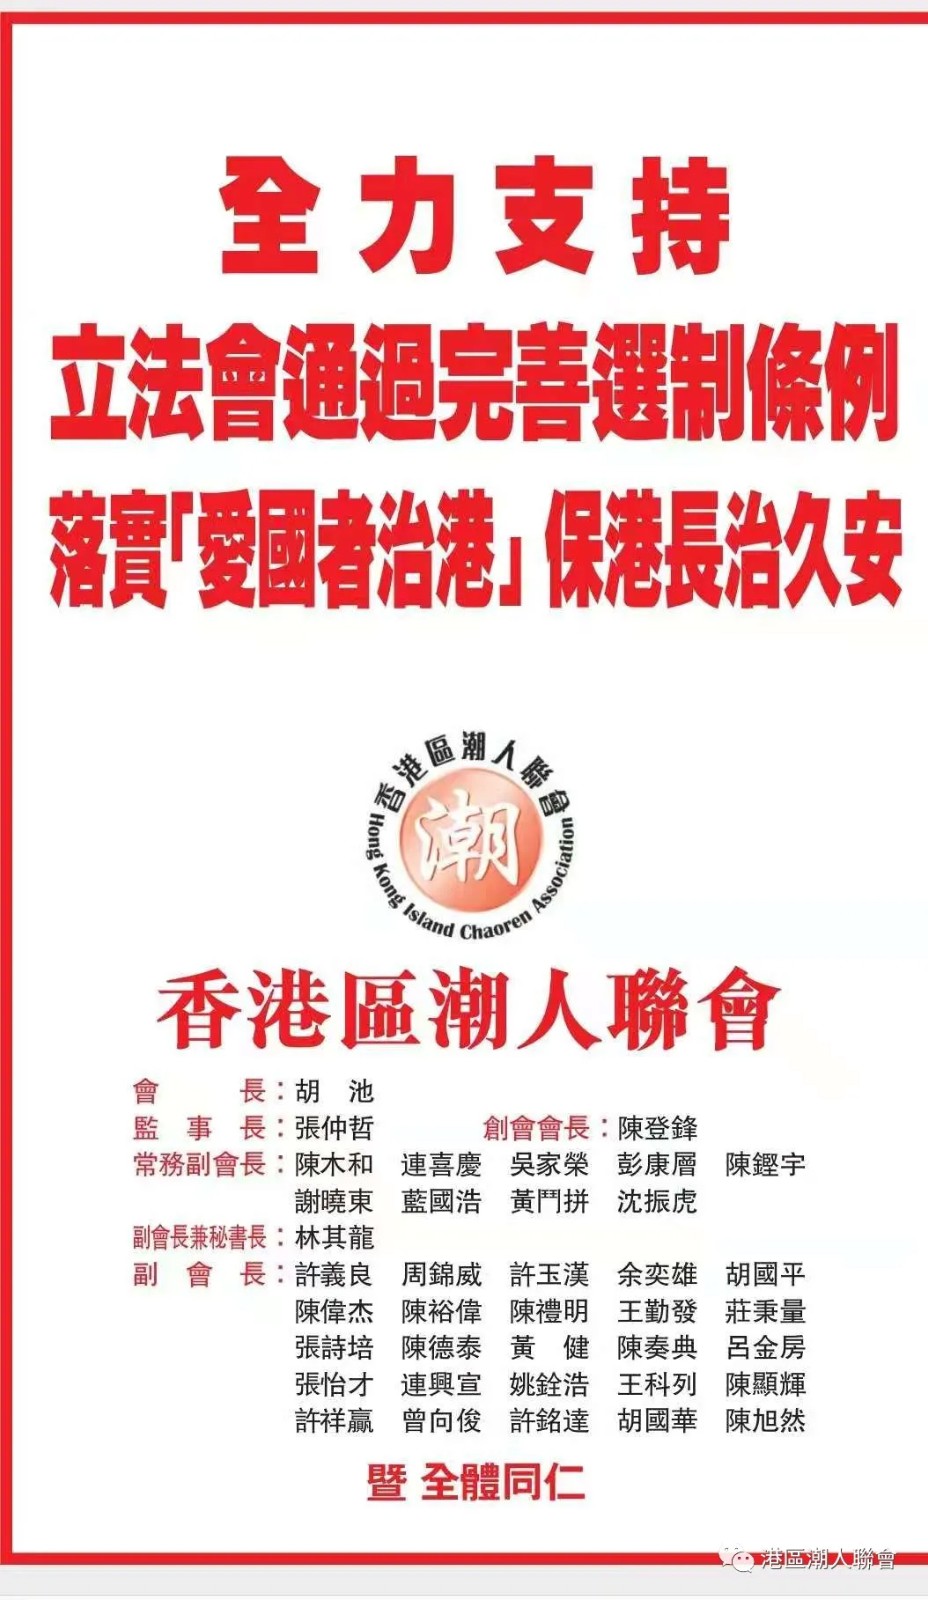 香港區潮人聯會支持立法會通過完善選舉制度條例草案-1